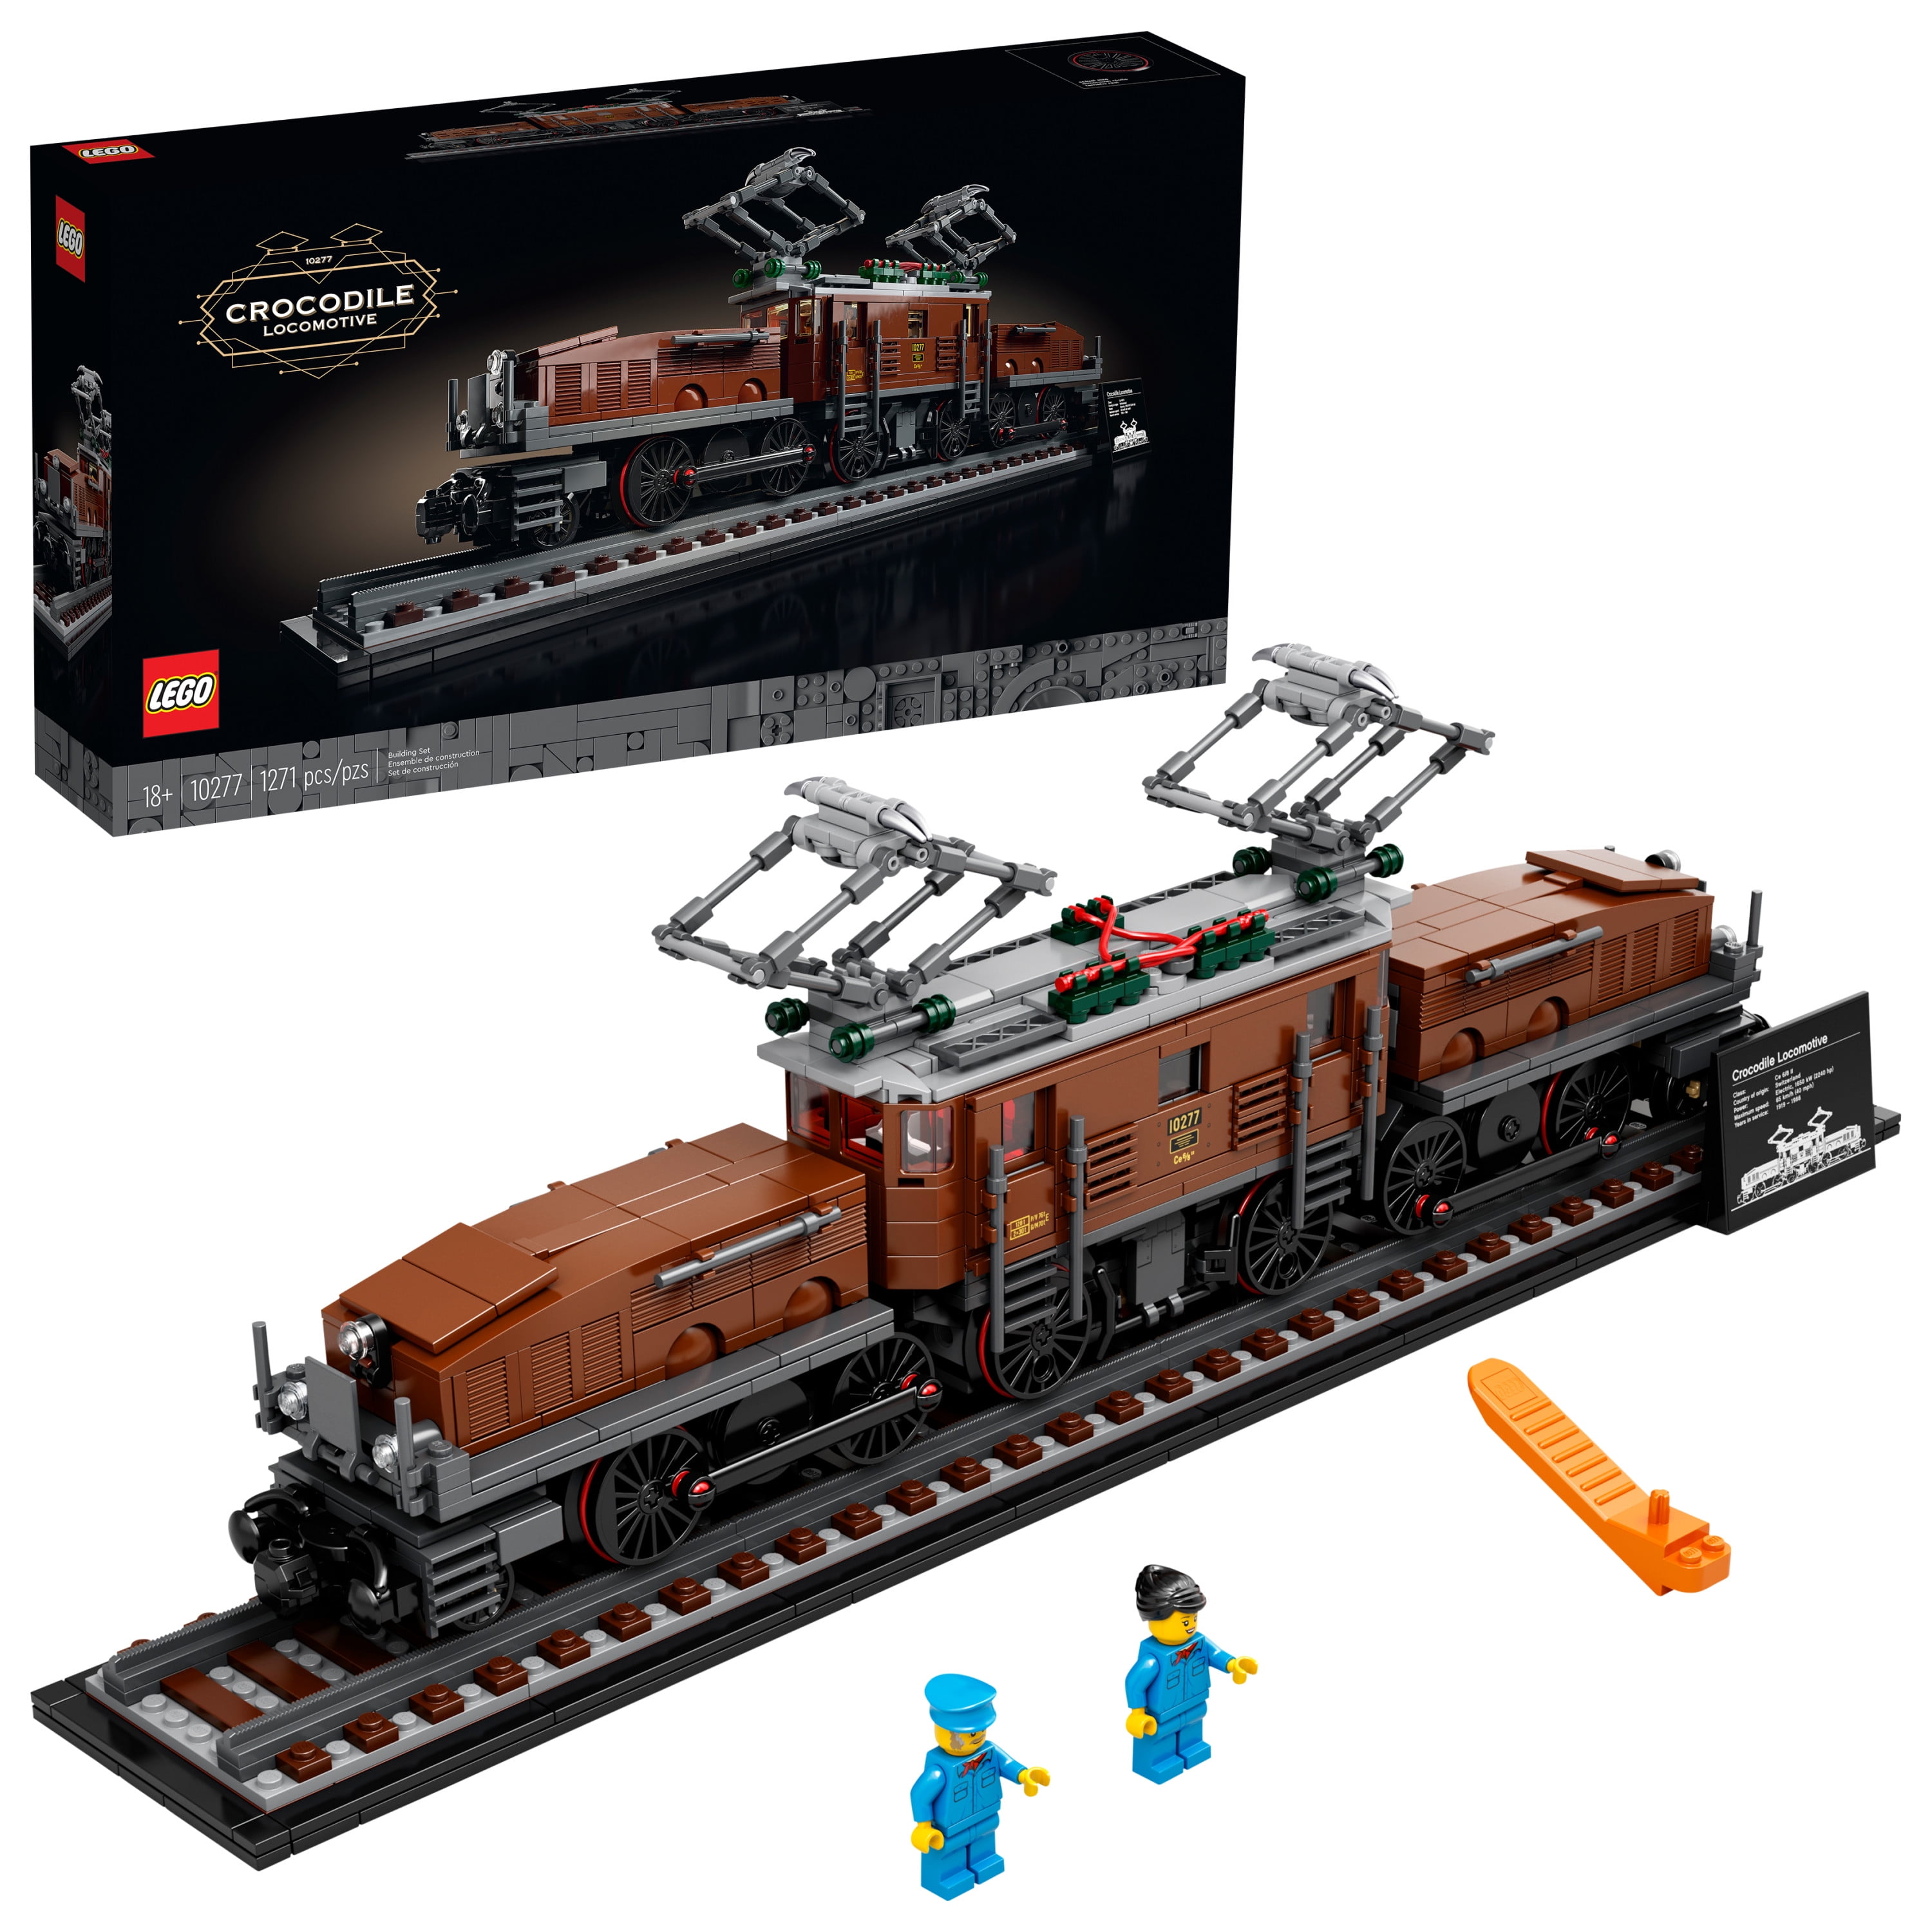 spil Klemme Zoom ind LEGO Crocodile Locomotive 10277 Building Toy - Walmart.com